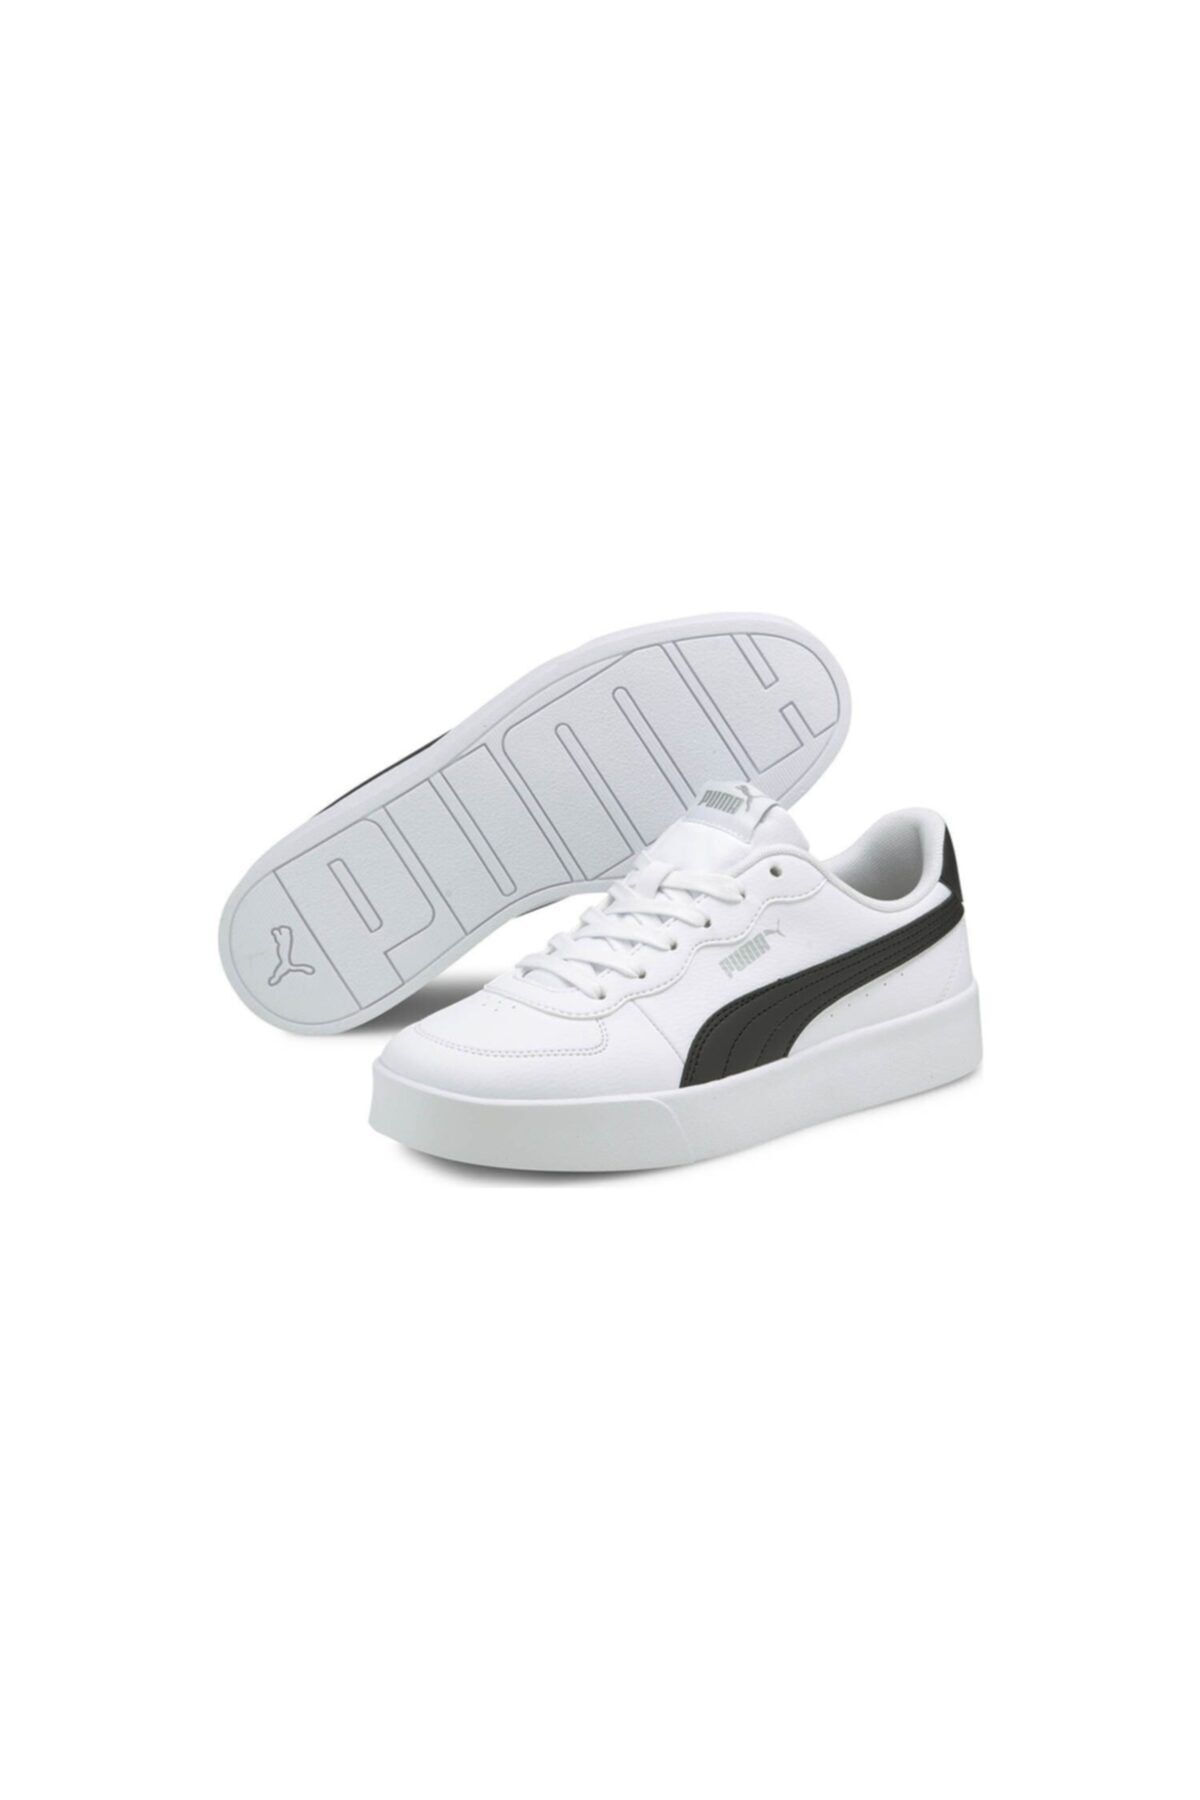 Puma Skye Clean Günlük Spor Ayakkabı Beyaz Kadın - 38014704